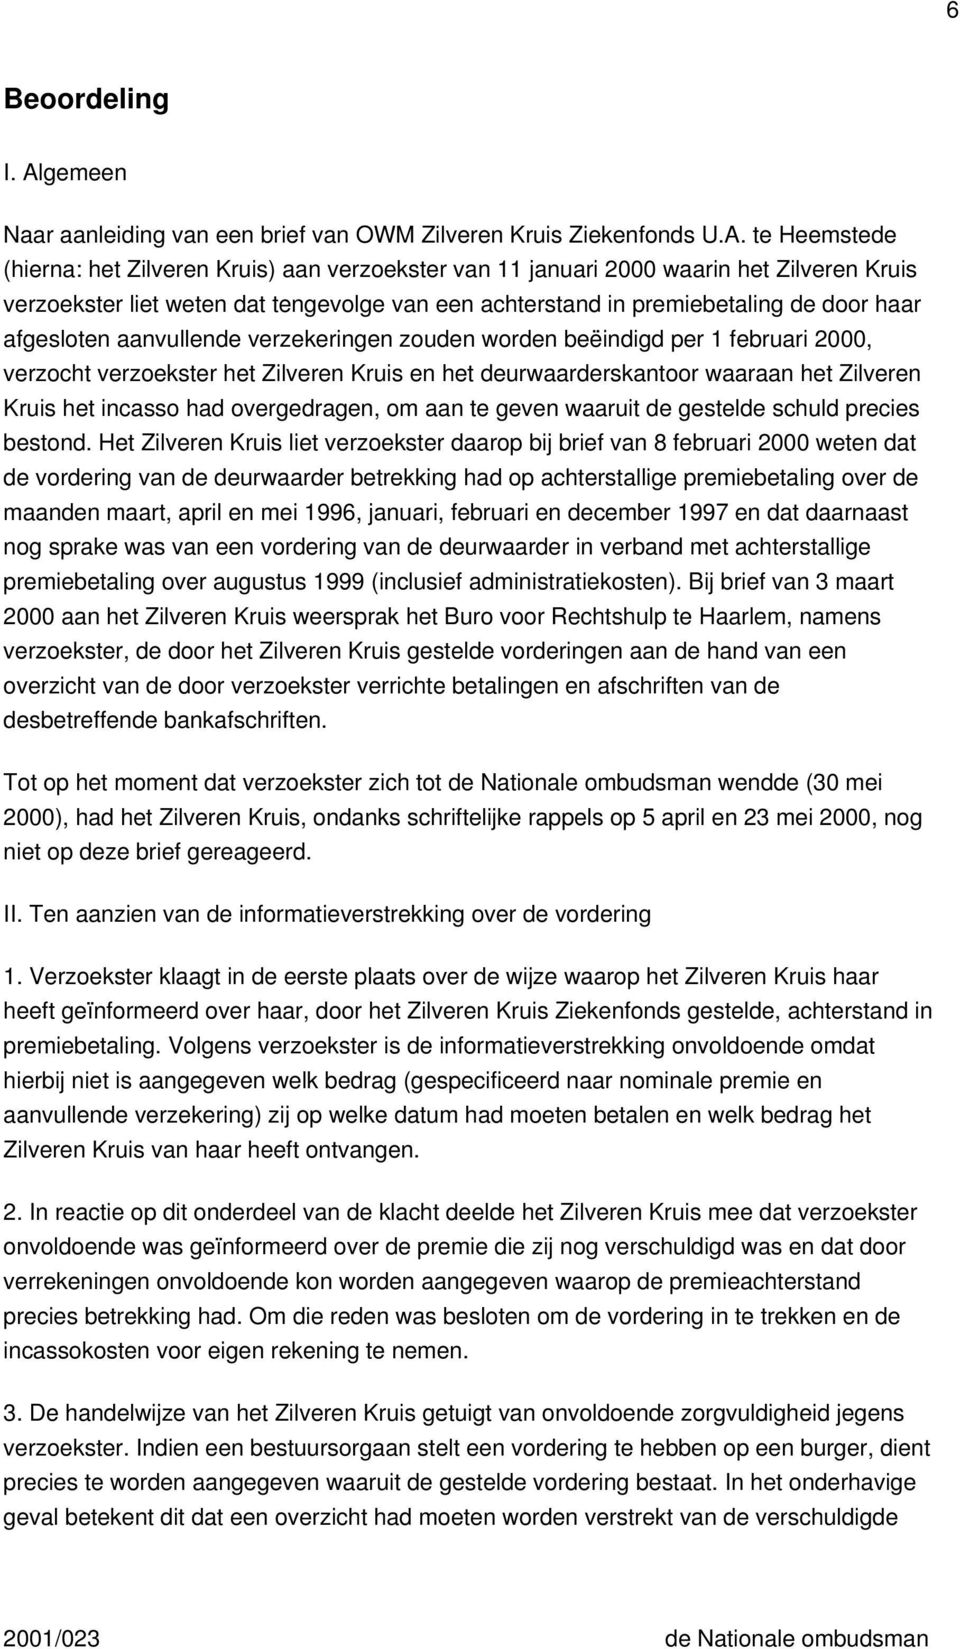 te Heemstede (hierna: het Zilveren Kruis) aan verzoekster van 11 januari 2000 waarin het Zilveren Kruis verzoekster liet weten dat tengevolge van een achterstand in premiebetaling de door haar